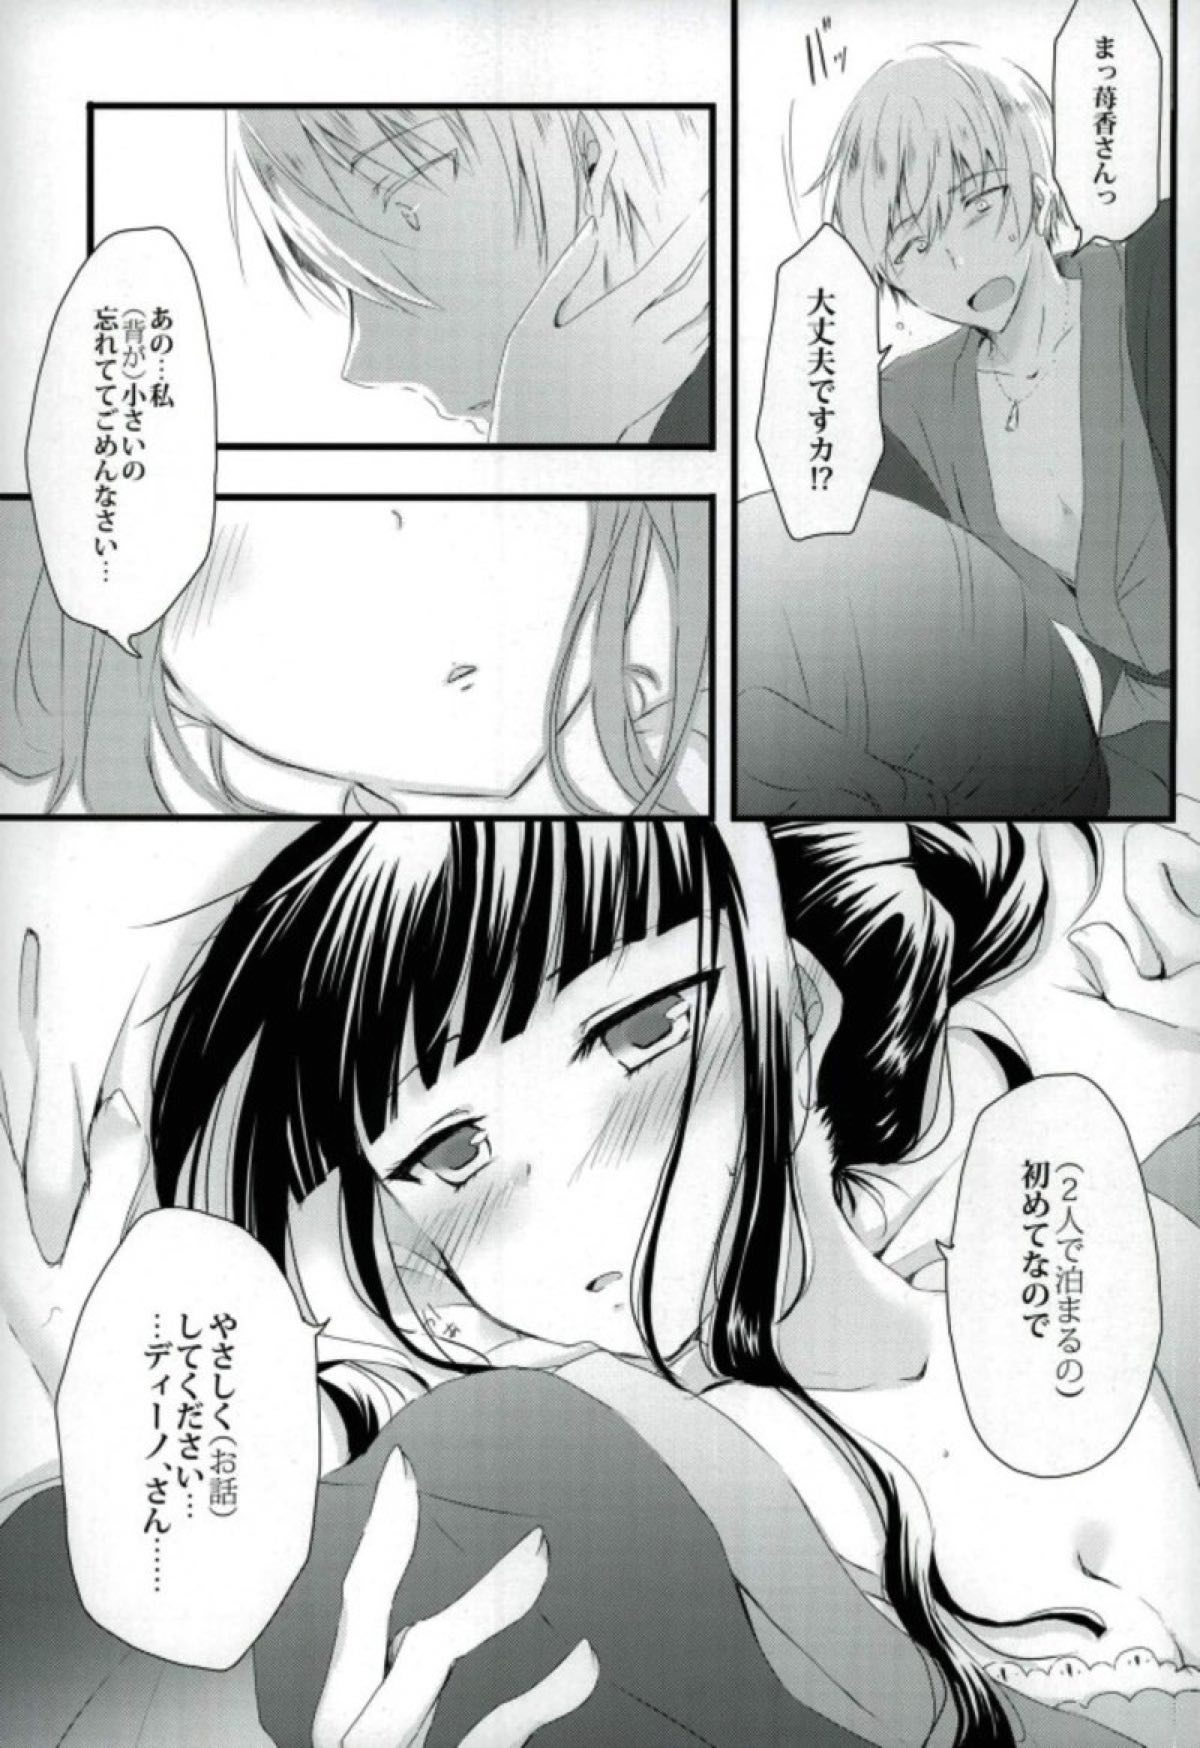 【ブレンド・S】恋する女の子たちの胸キュン不可避な４コマ漫画☆の画像8枚目